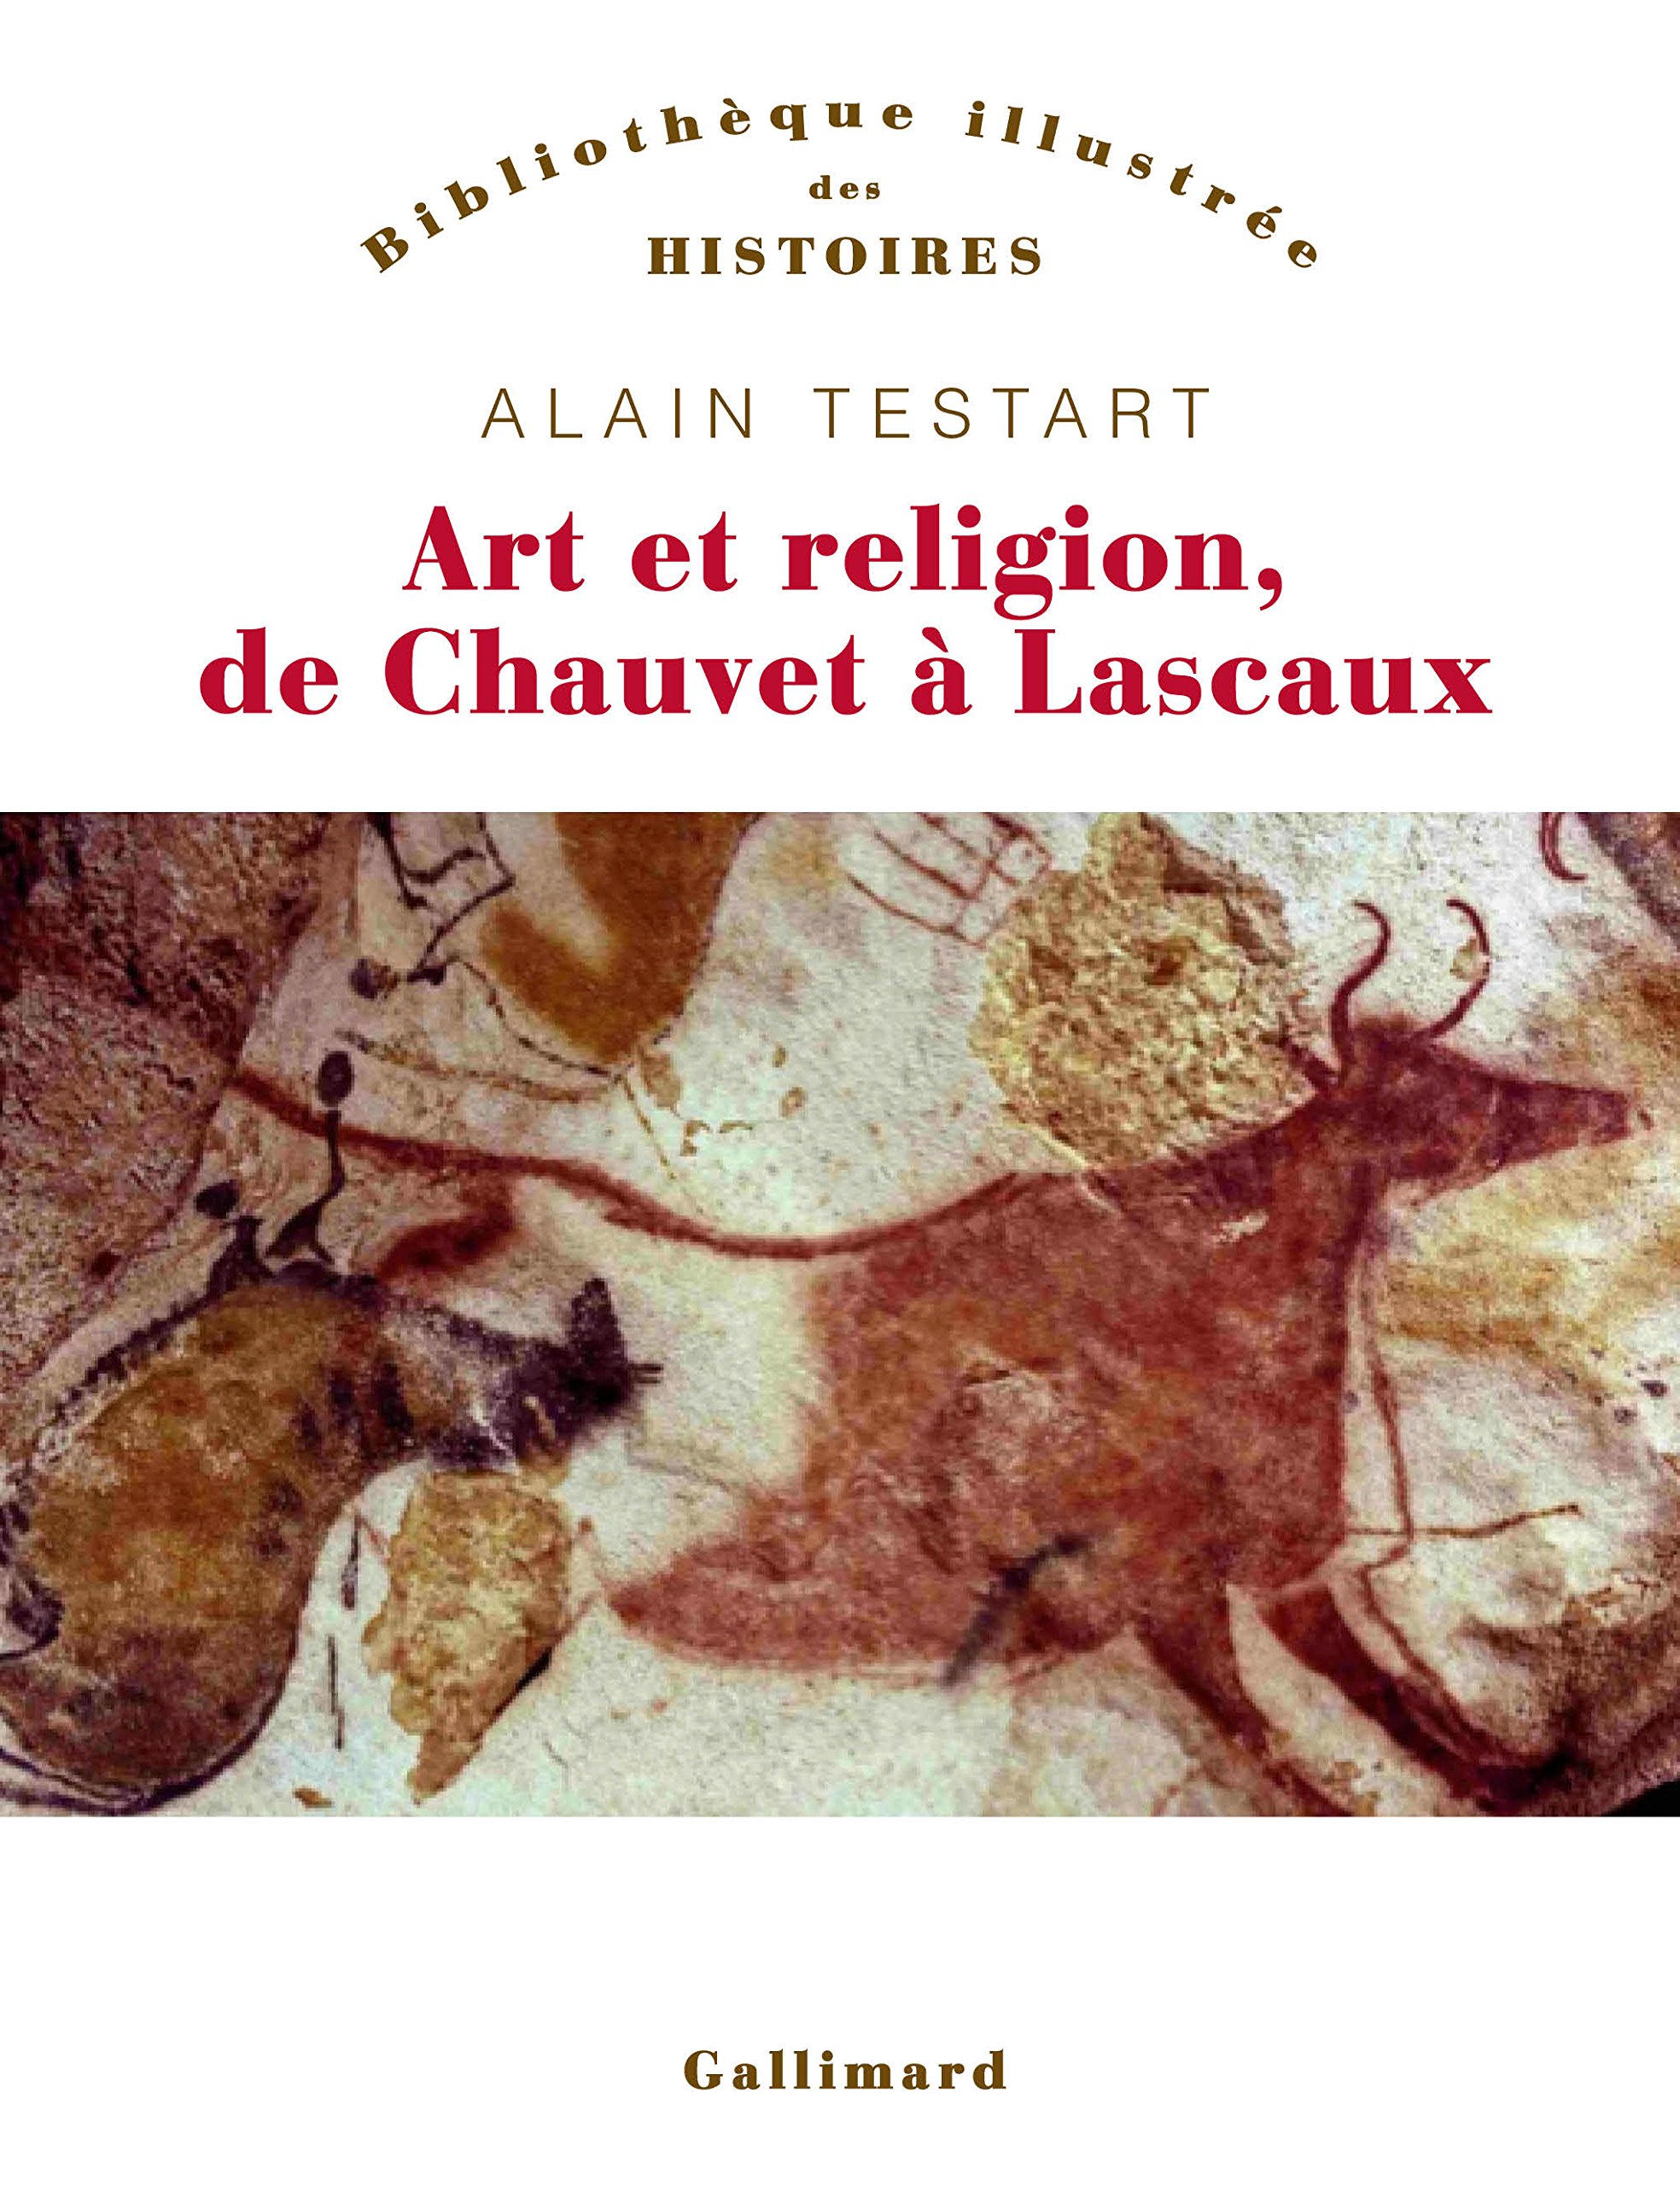 ÉPUISÉ - Art et religion de Chauvet à Lascaux, 2016, 380 p.